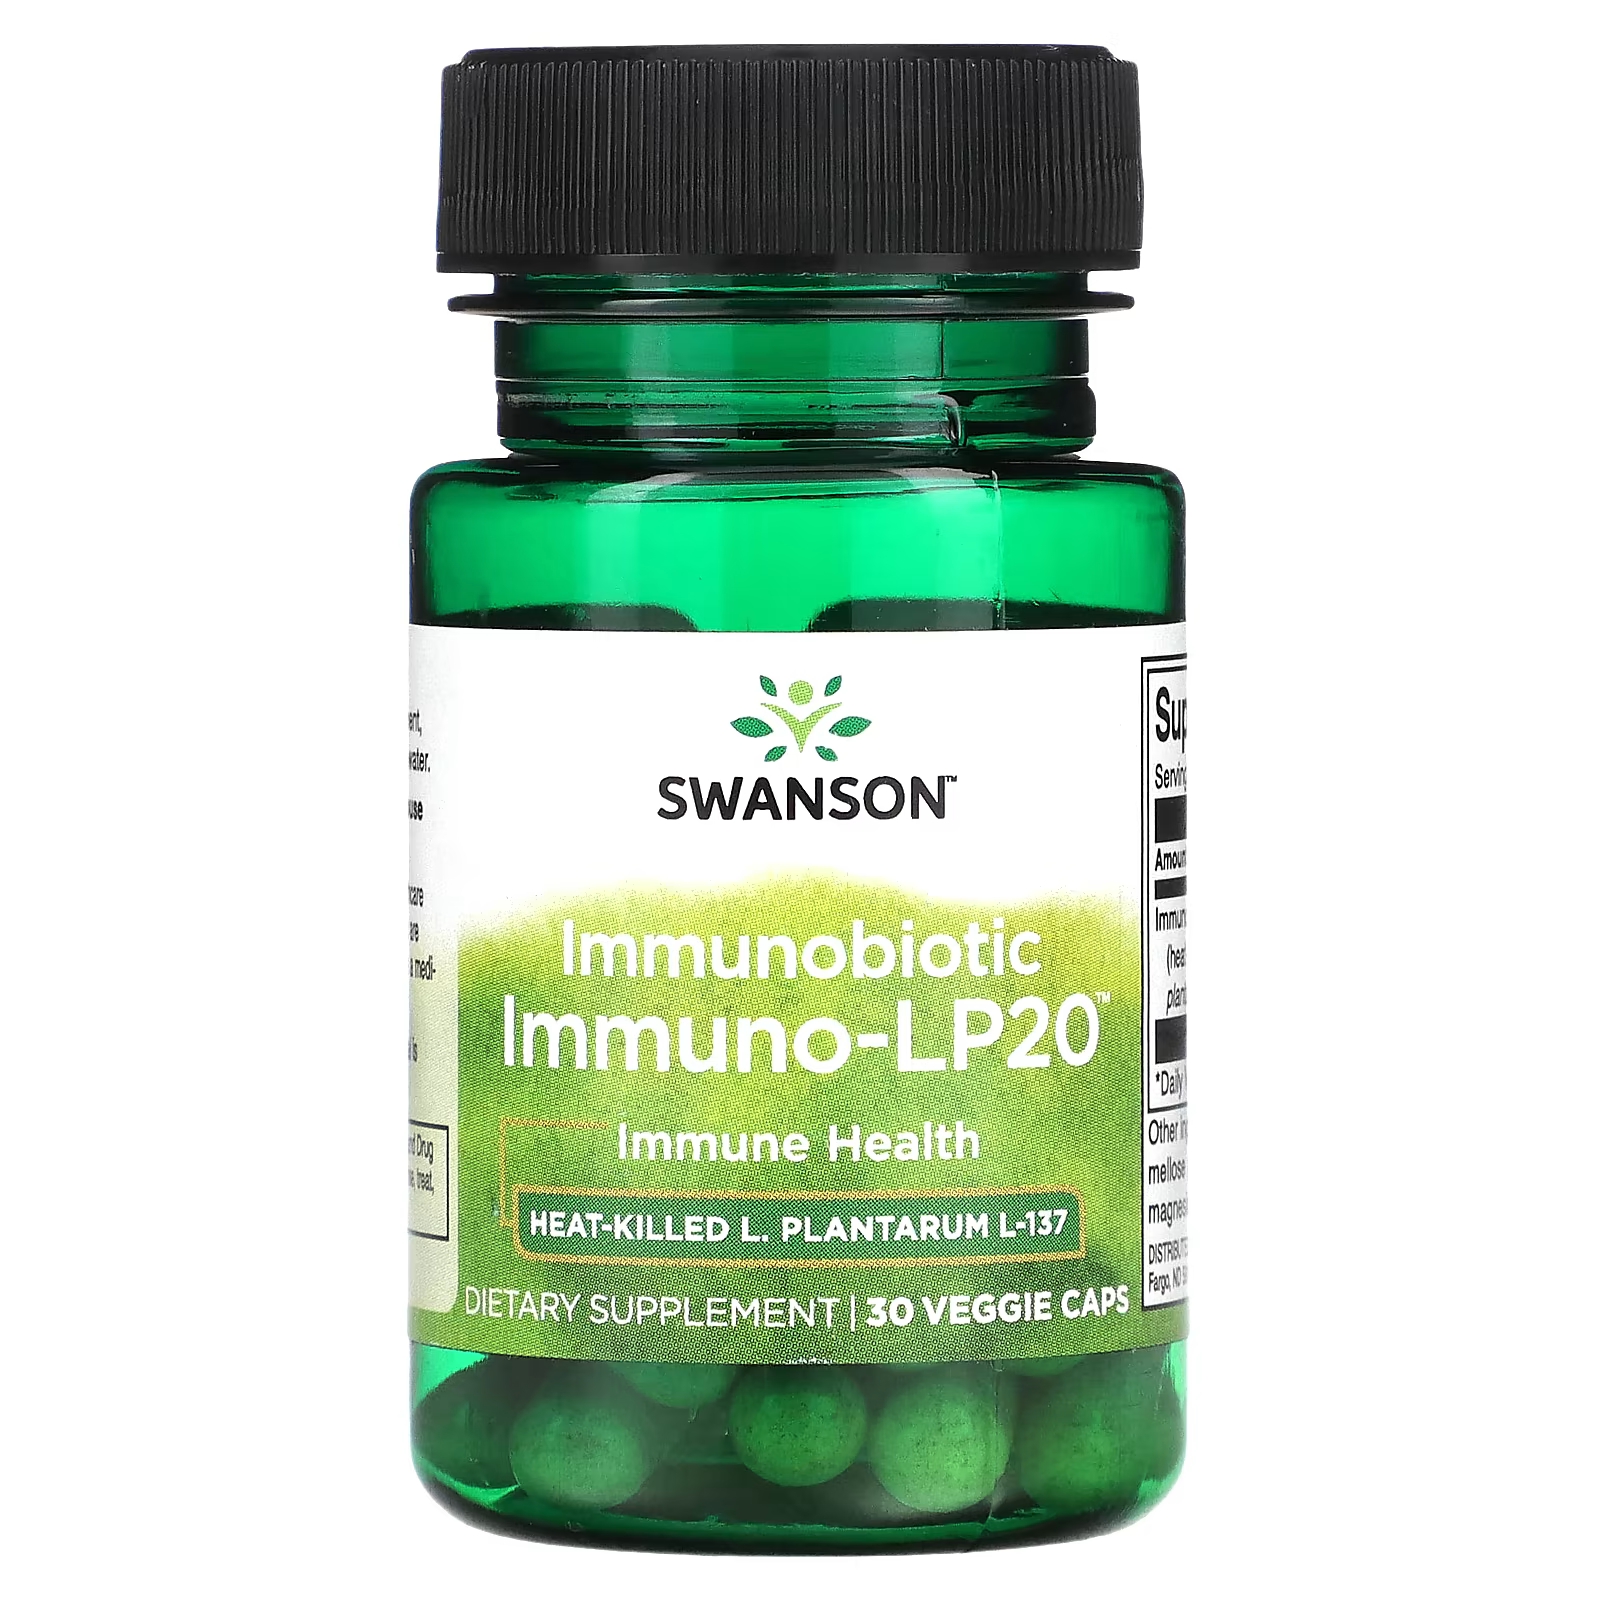 Пищевая добавка Swanson Immunobiotic Immuno-LP20, 30 растительных капсул пищевая добавка swanson immunobiotic immuno lp20 30 растительных капсул